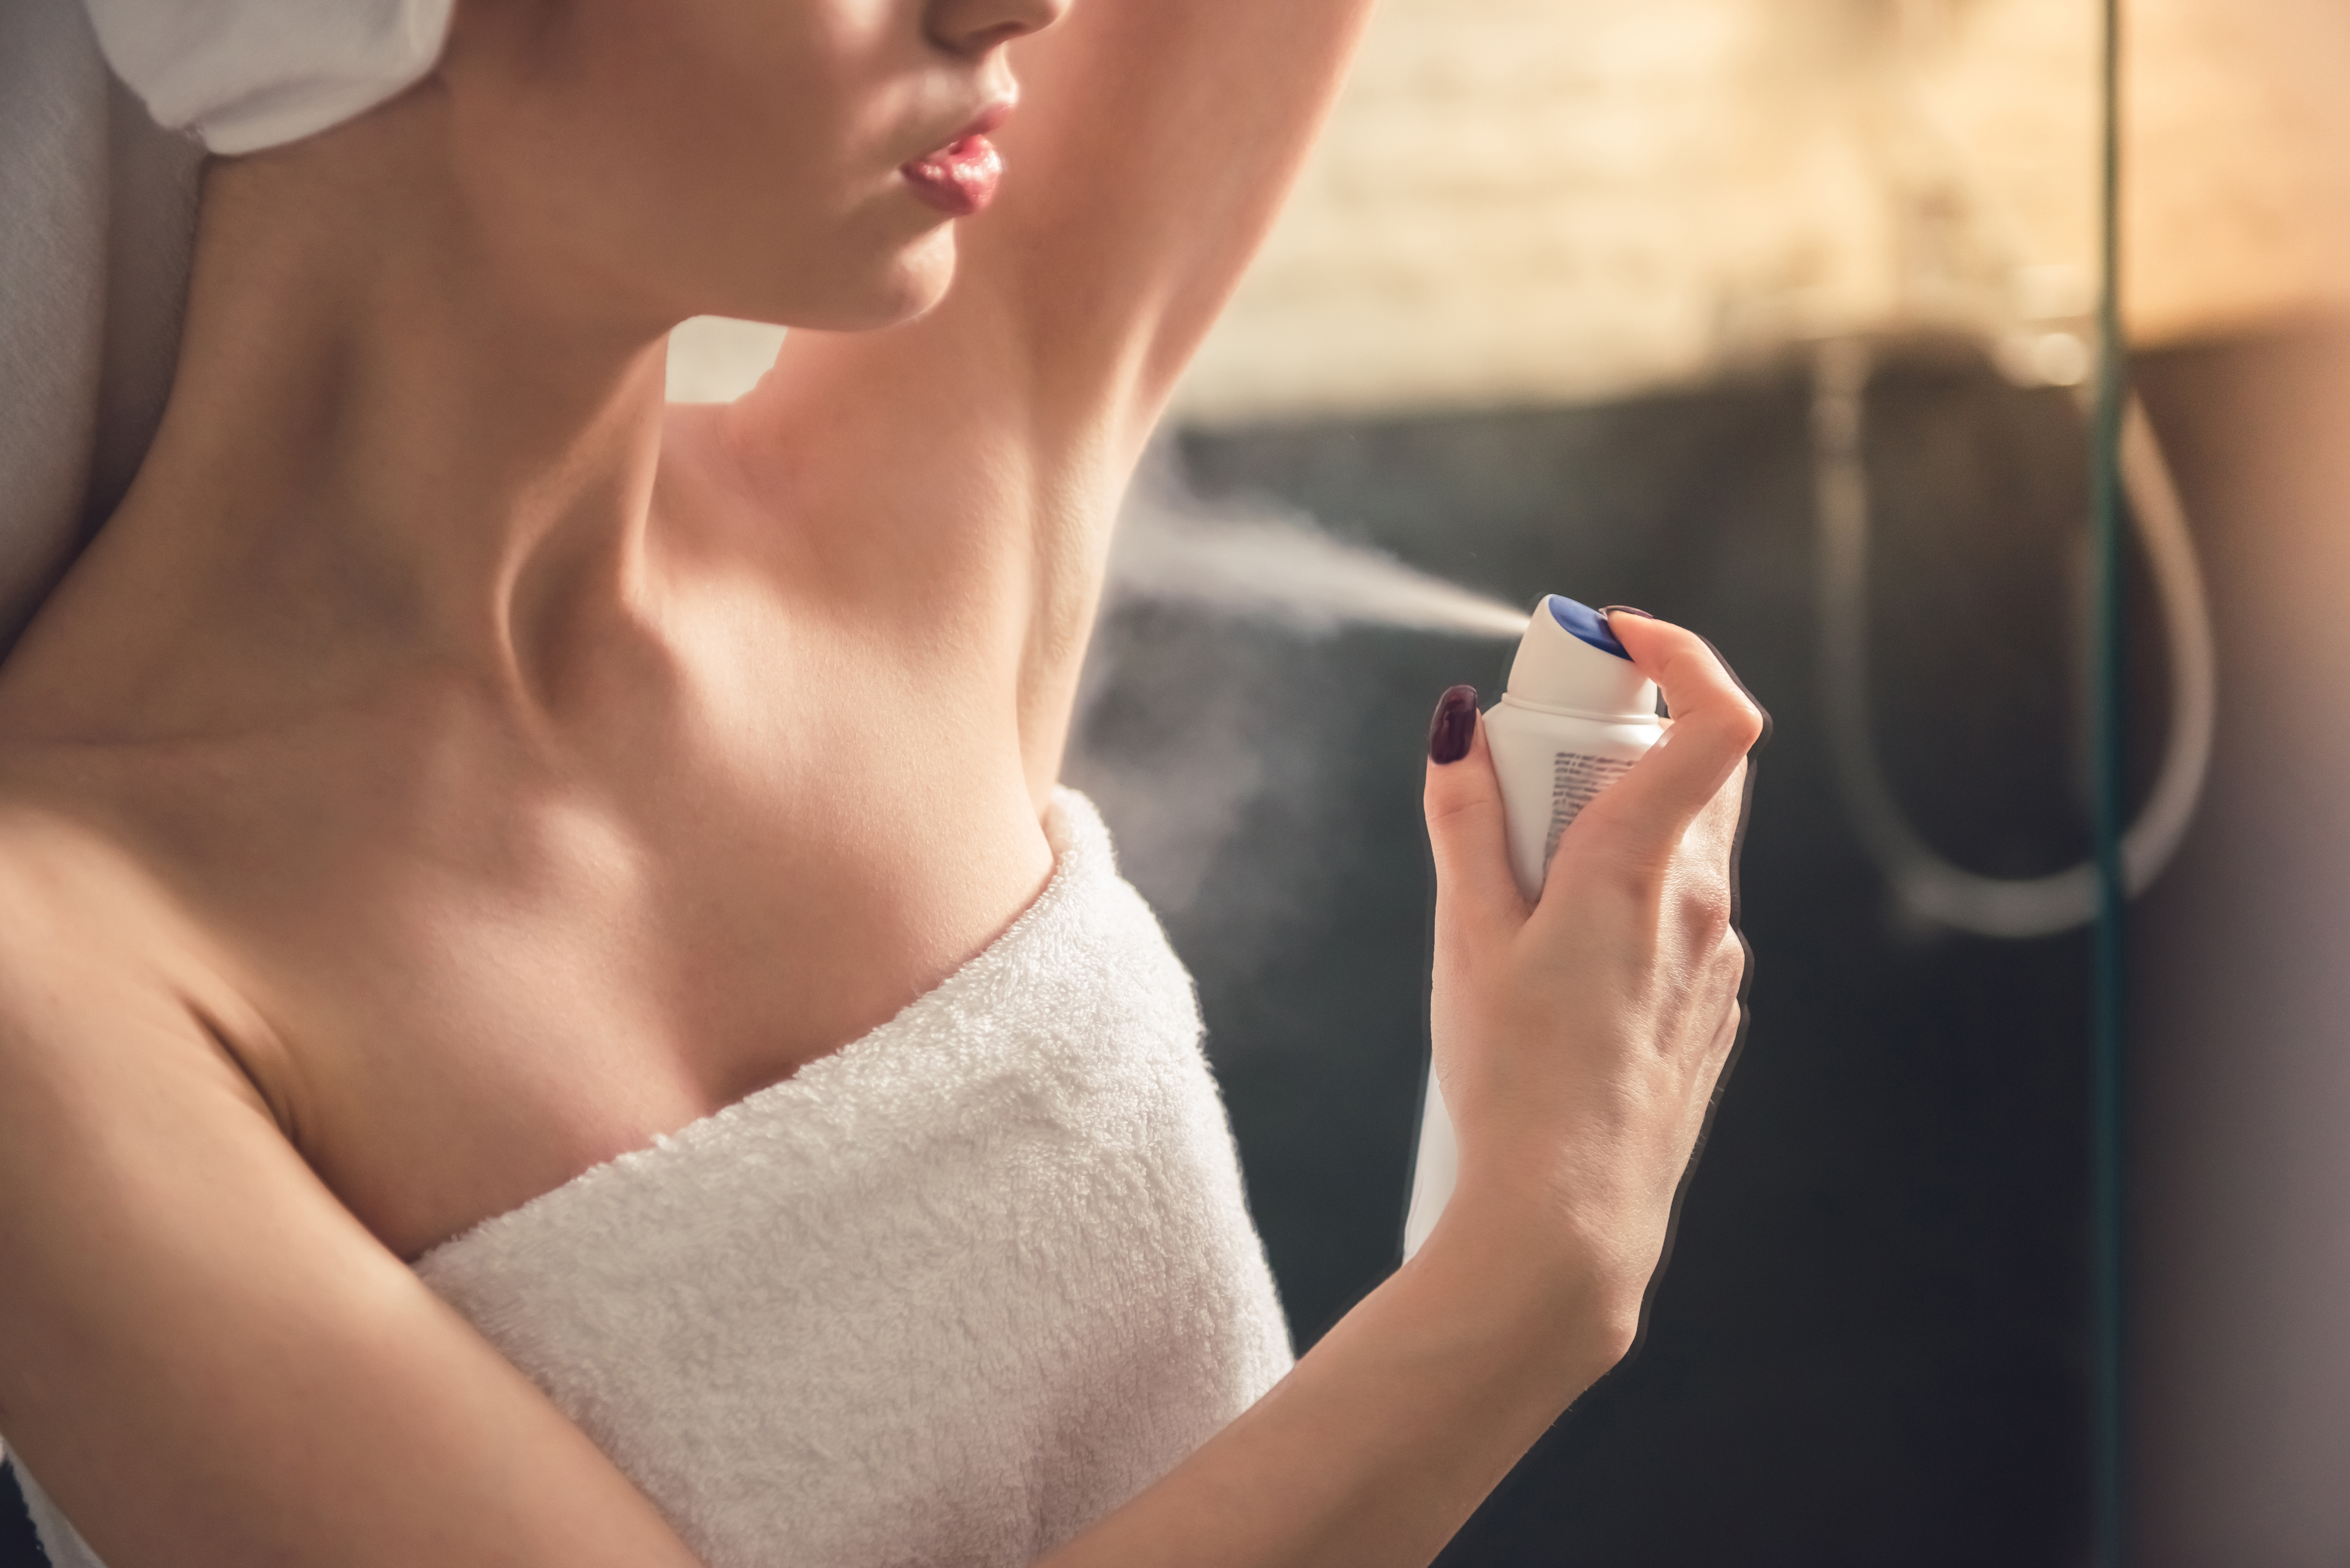 Femme vaporisant du déodorant sur ses aisselles | Source : Shutterstock